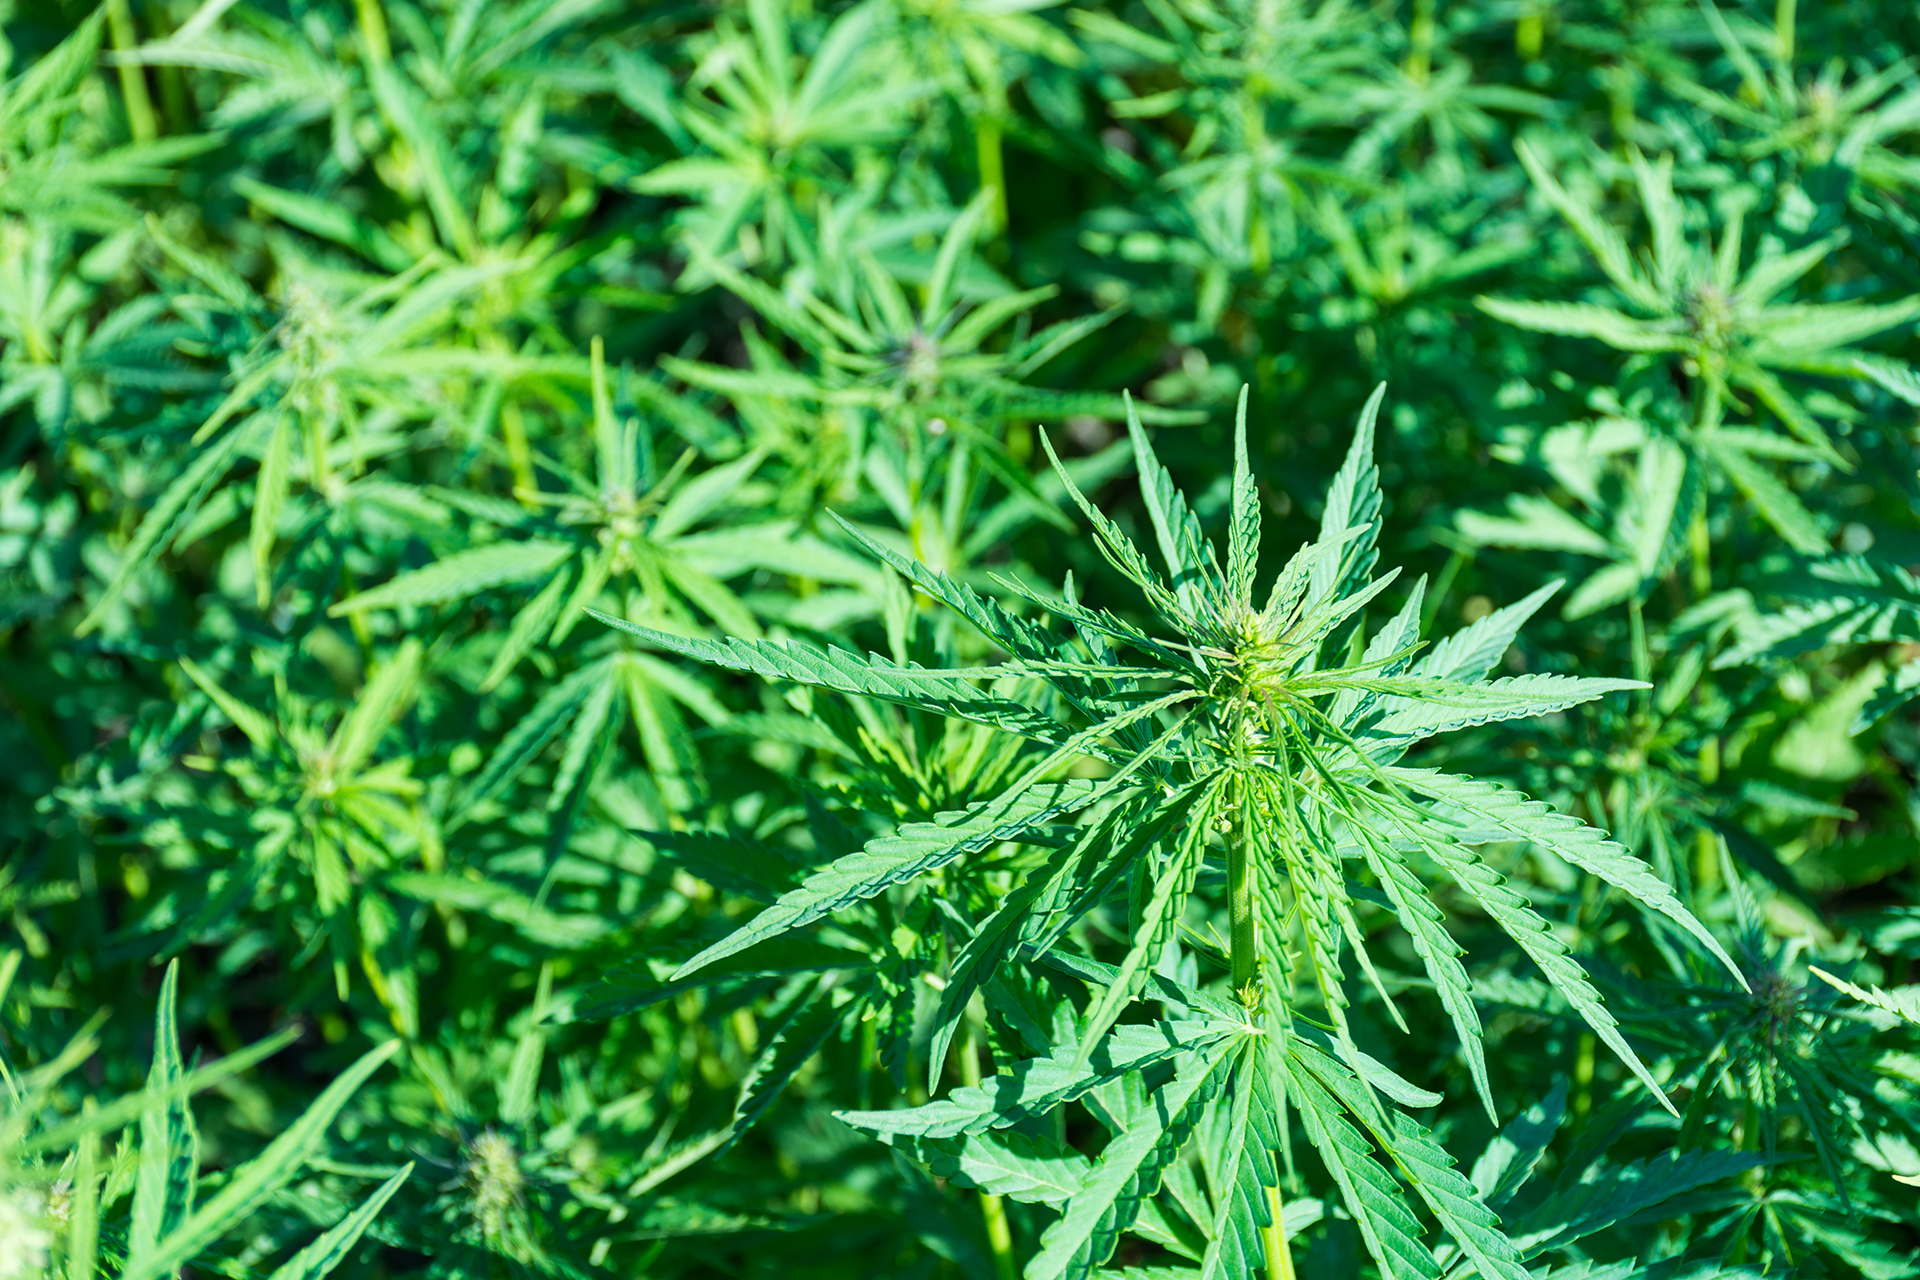 Cannabis cultivation supplies